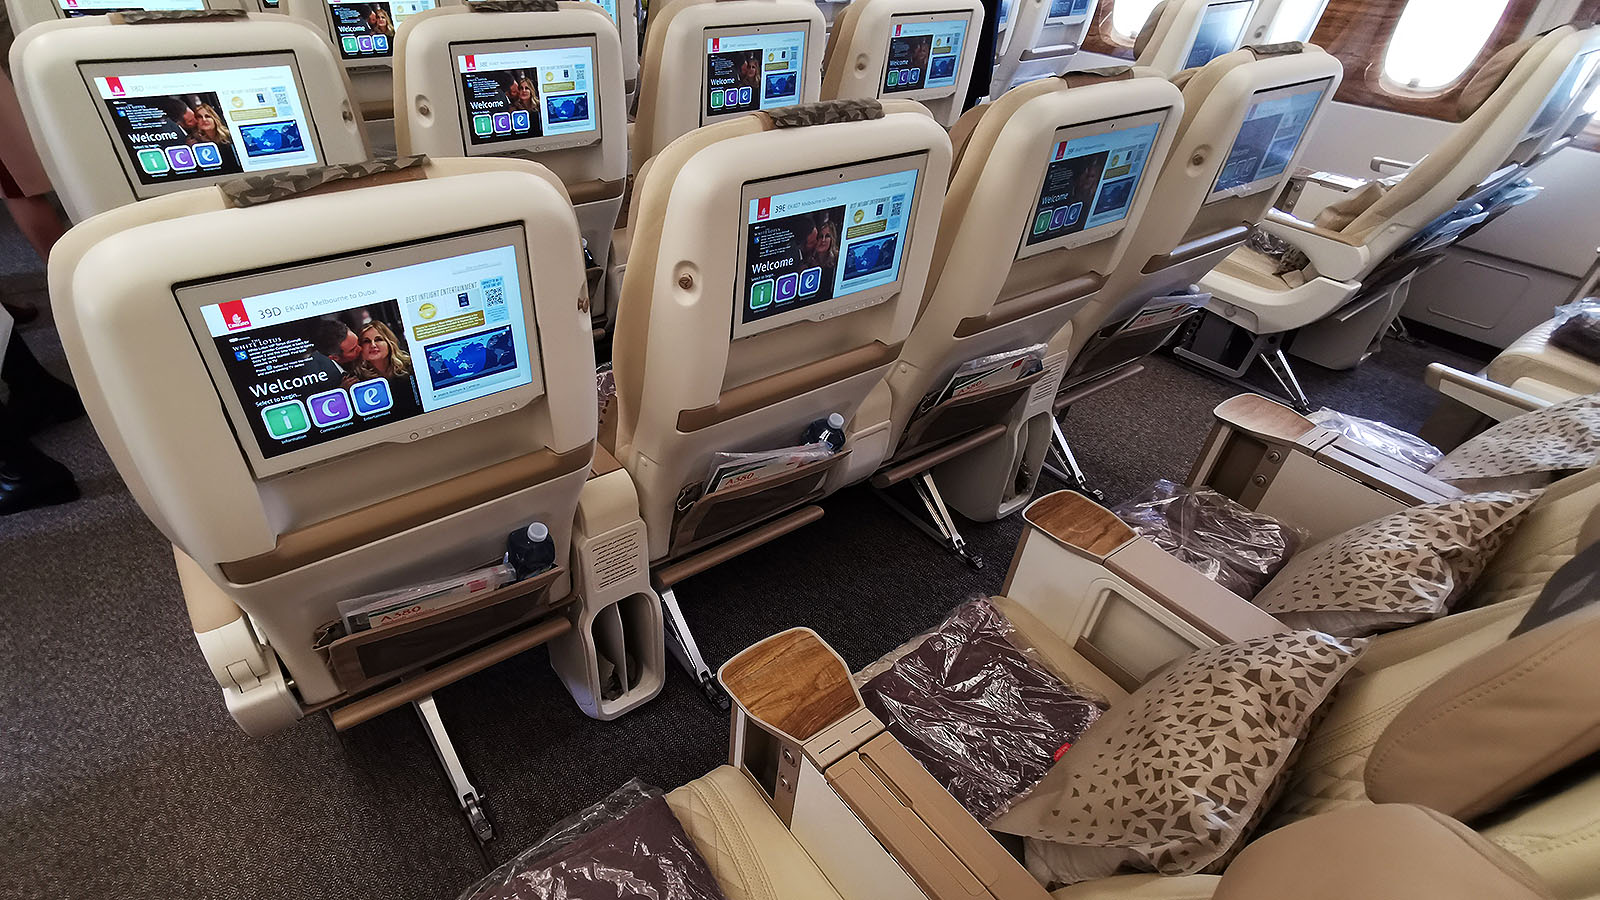 Television screens in Emirates Airbus A380 Premium Economy